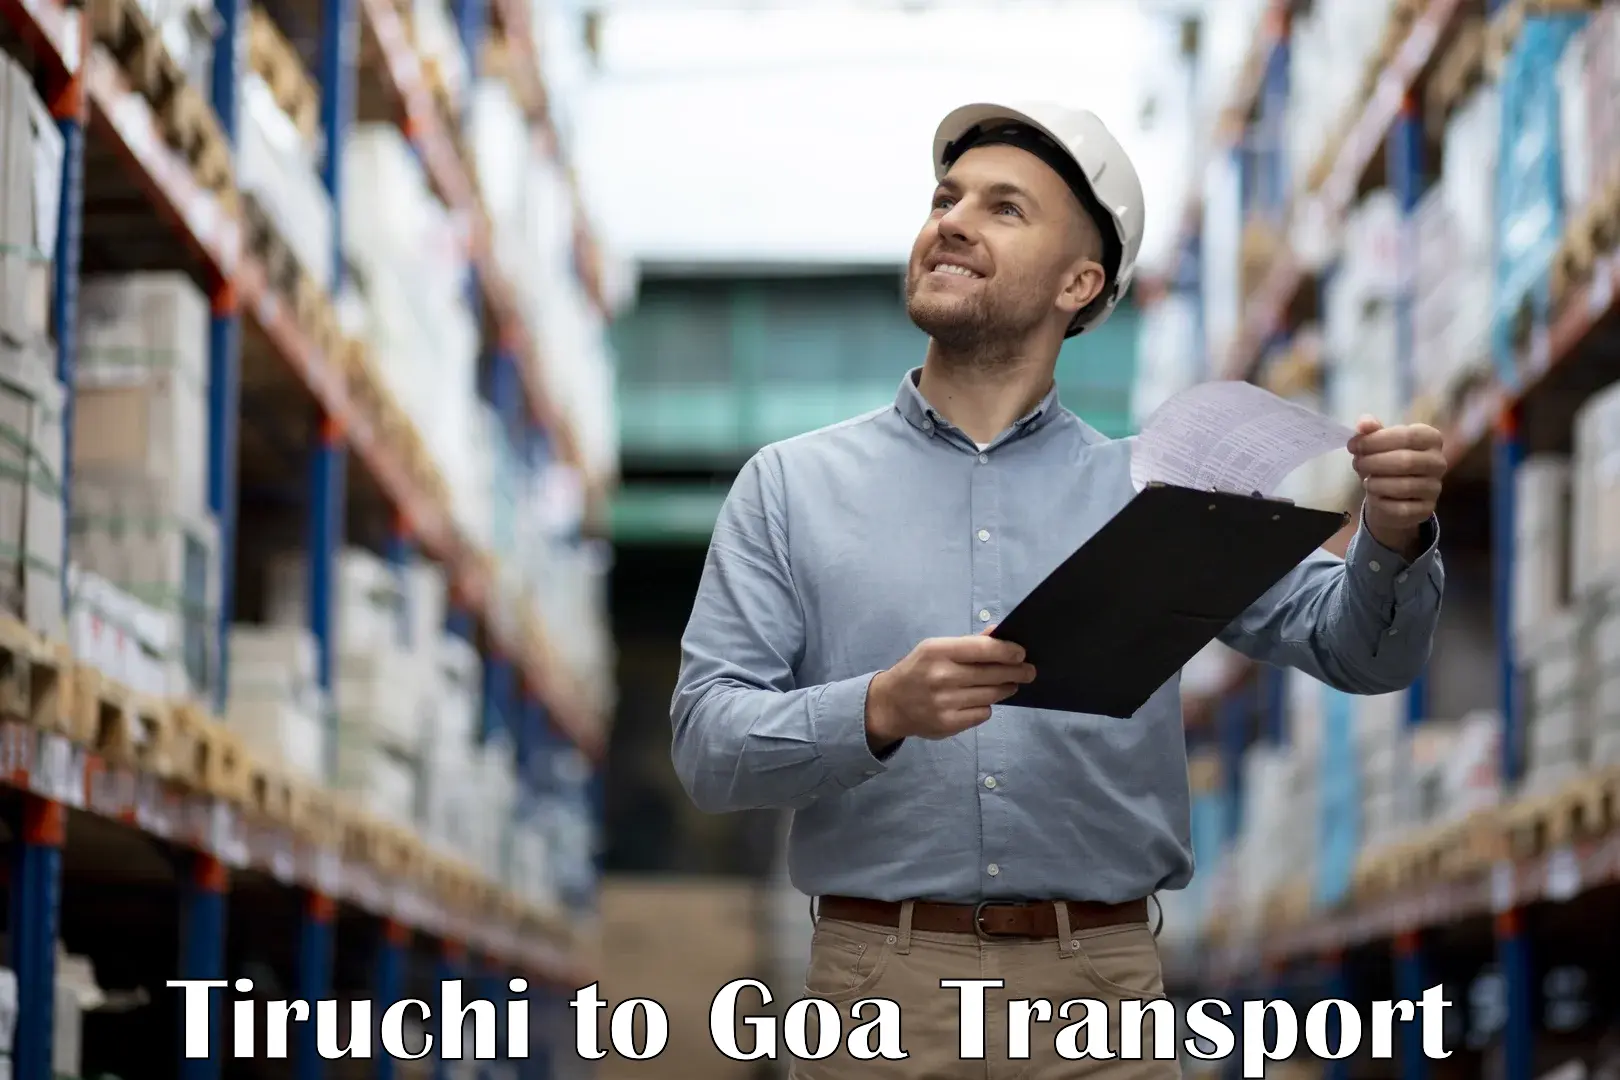 Online transport service Tiruchi to Ponda